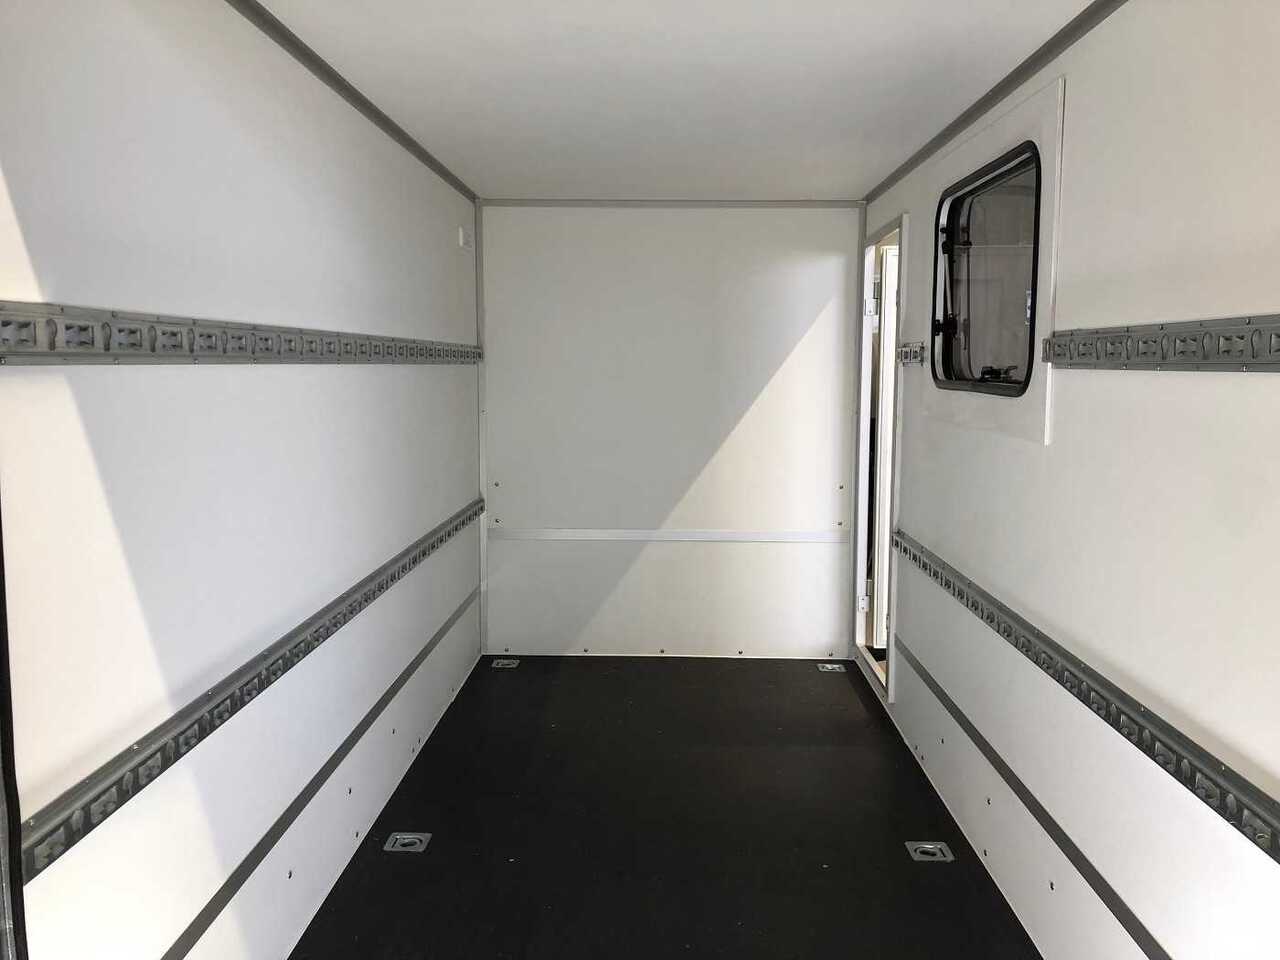 New Closed box trailer BLYSS F2730HTD Rampe Tür Fenster Kofferanhänger Multi: picture 14